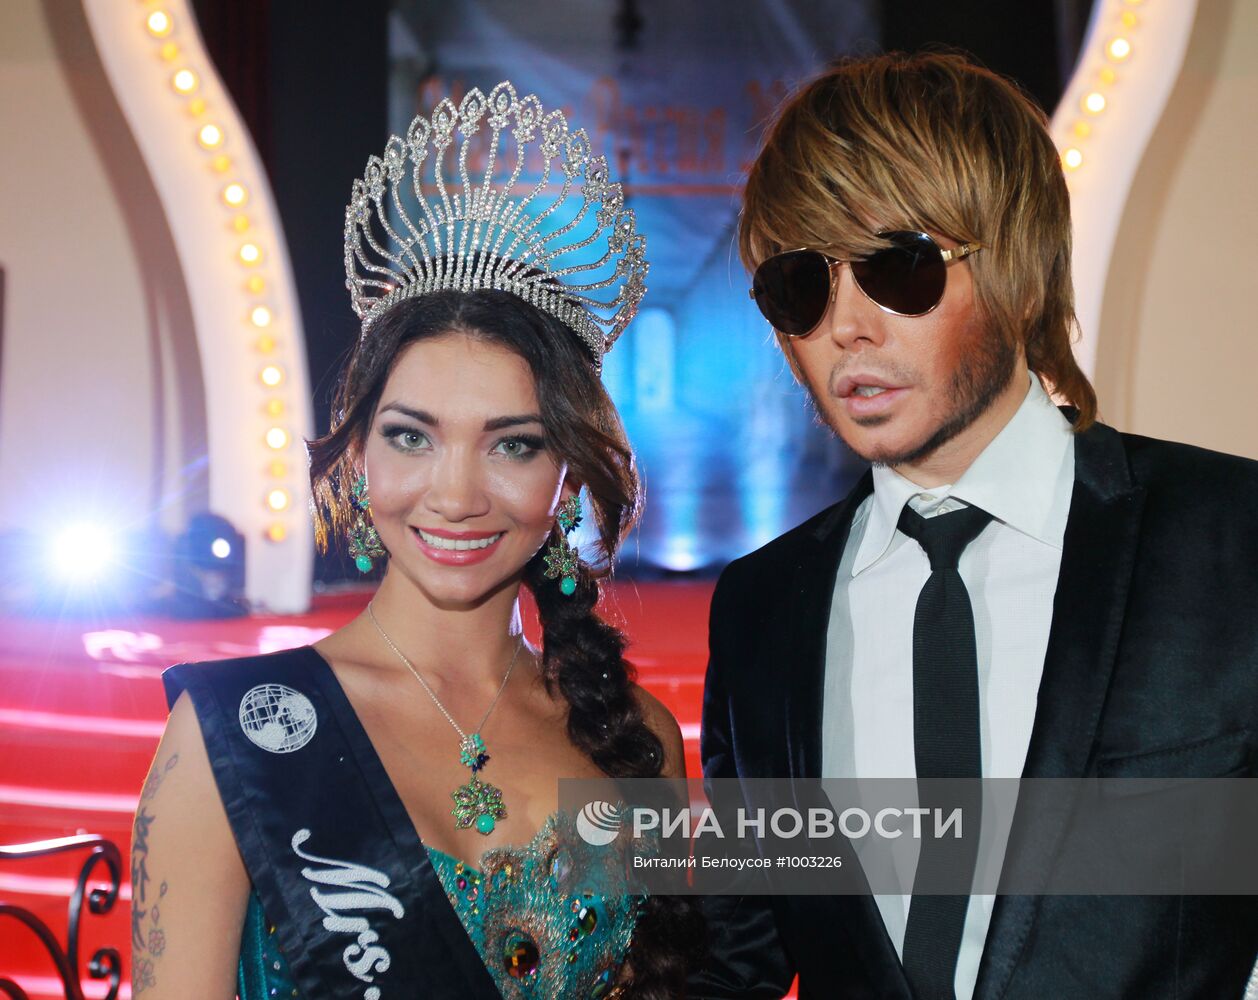 Финал конкурса красоты "Миссис Россия 2011"